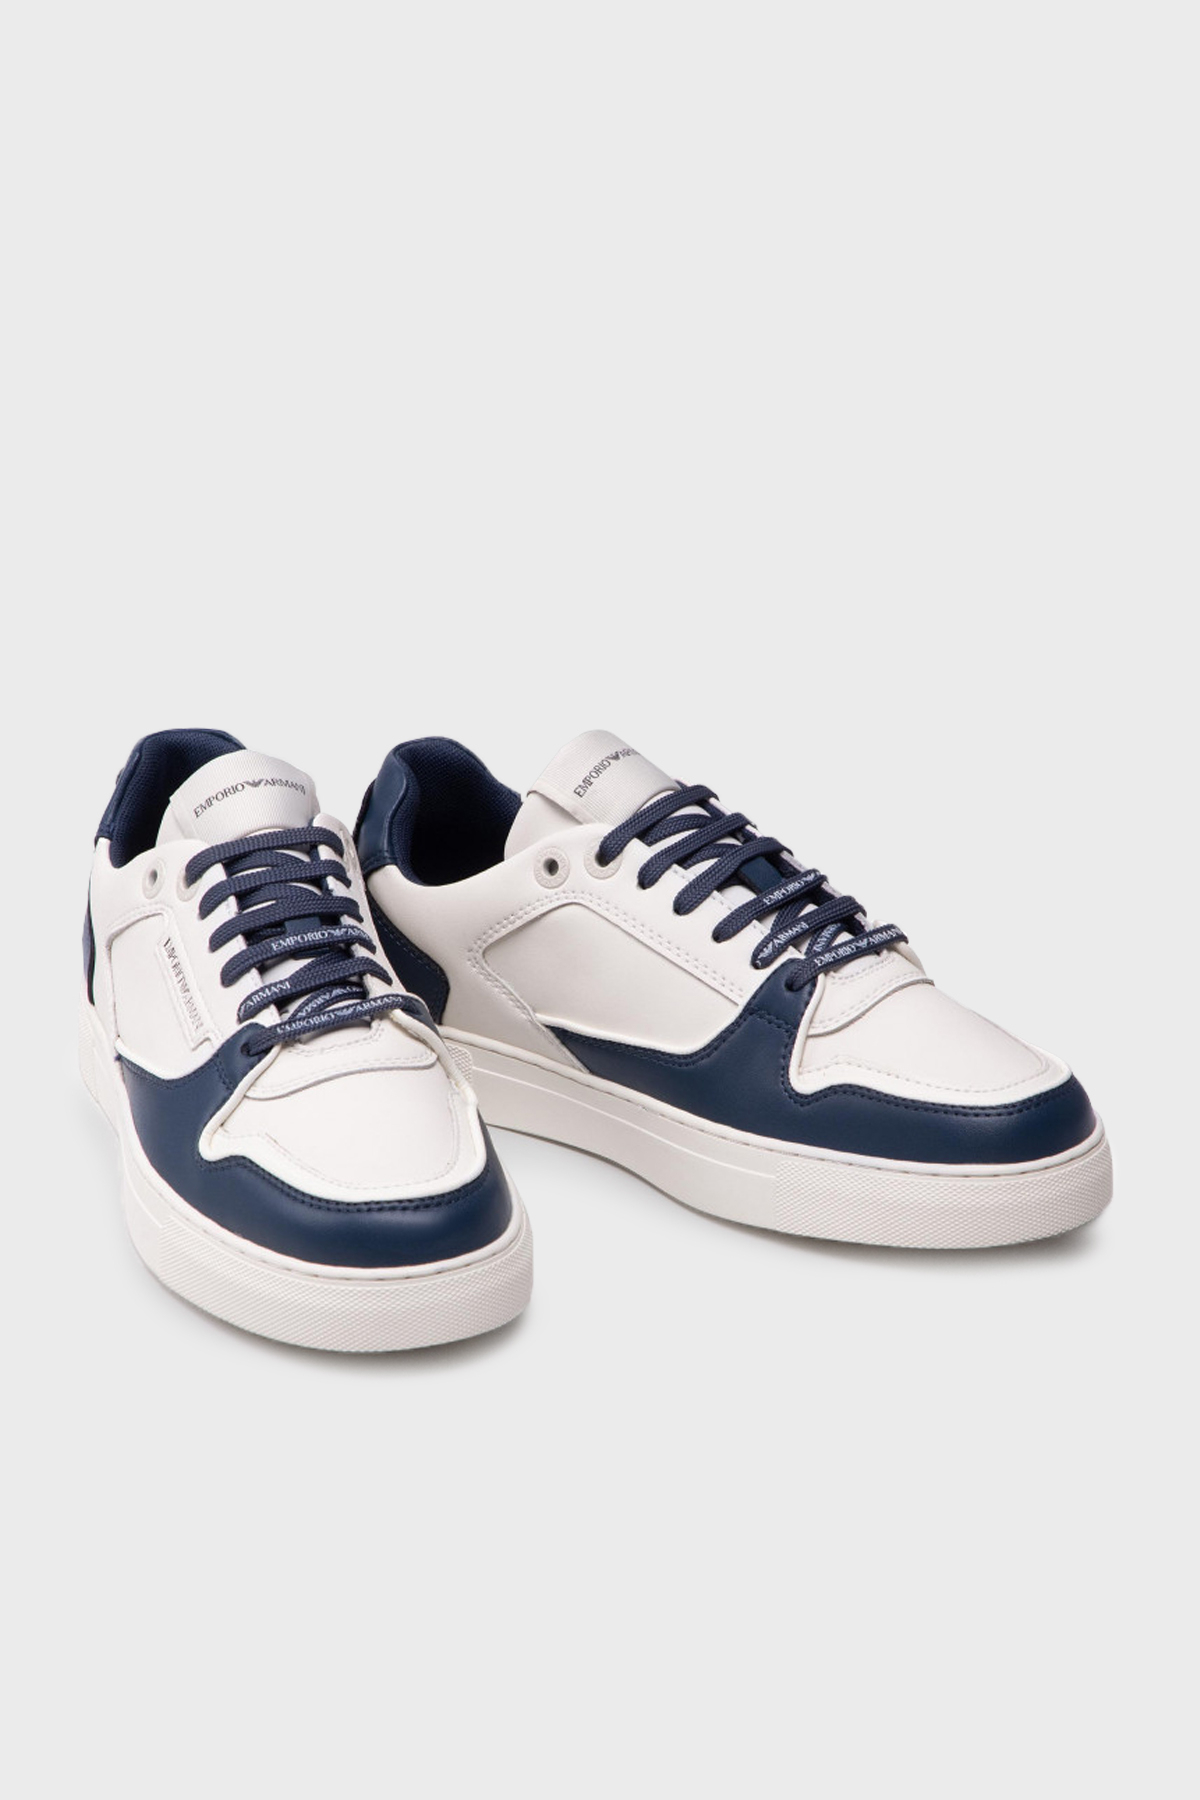 Emporio Armani Logolu Deri Sneaker Erkek Ayakkabı X4X549 XN185 Q814 Kırık Beyaz-Lacivert